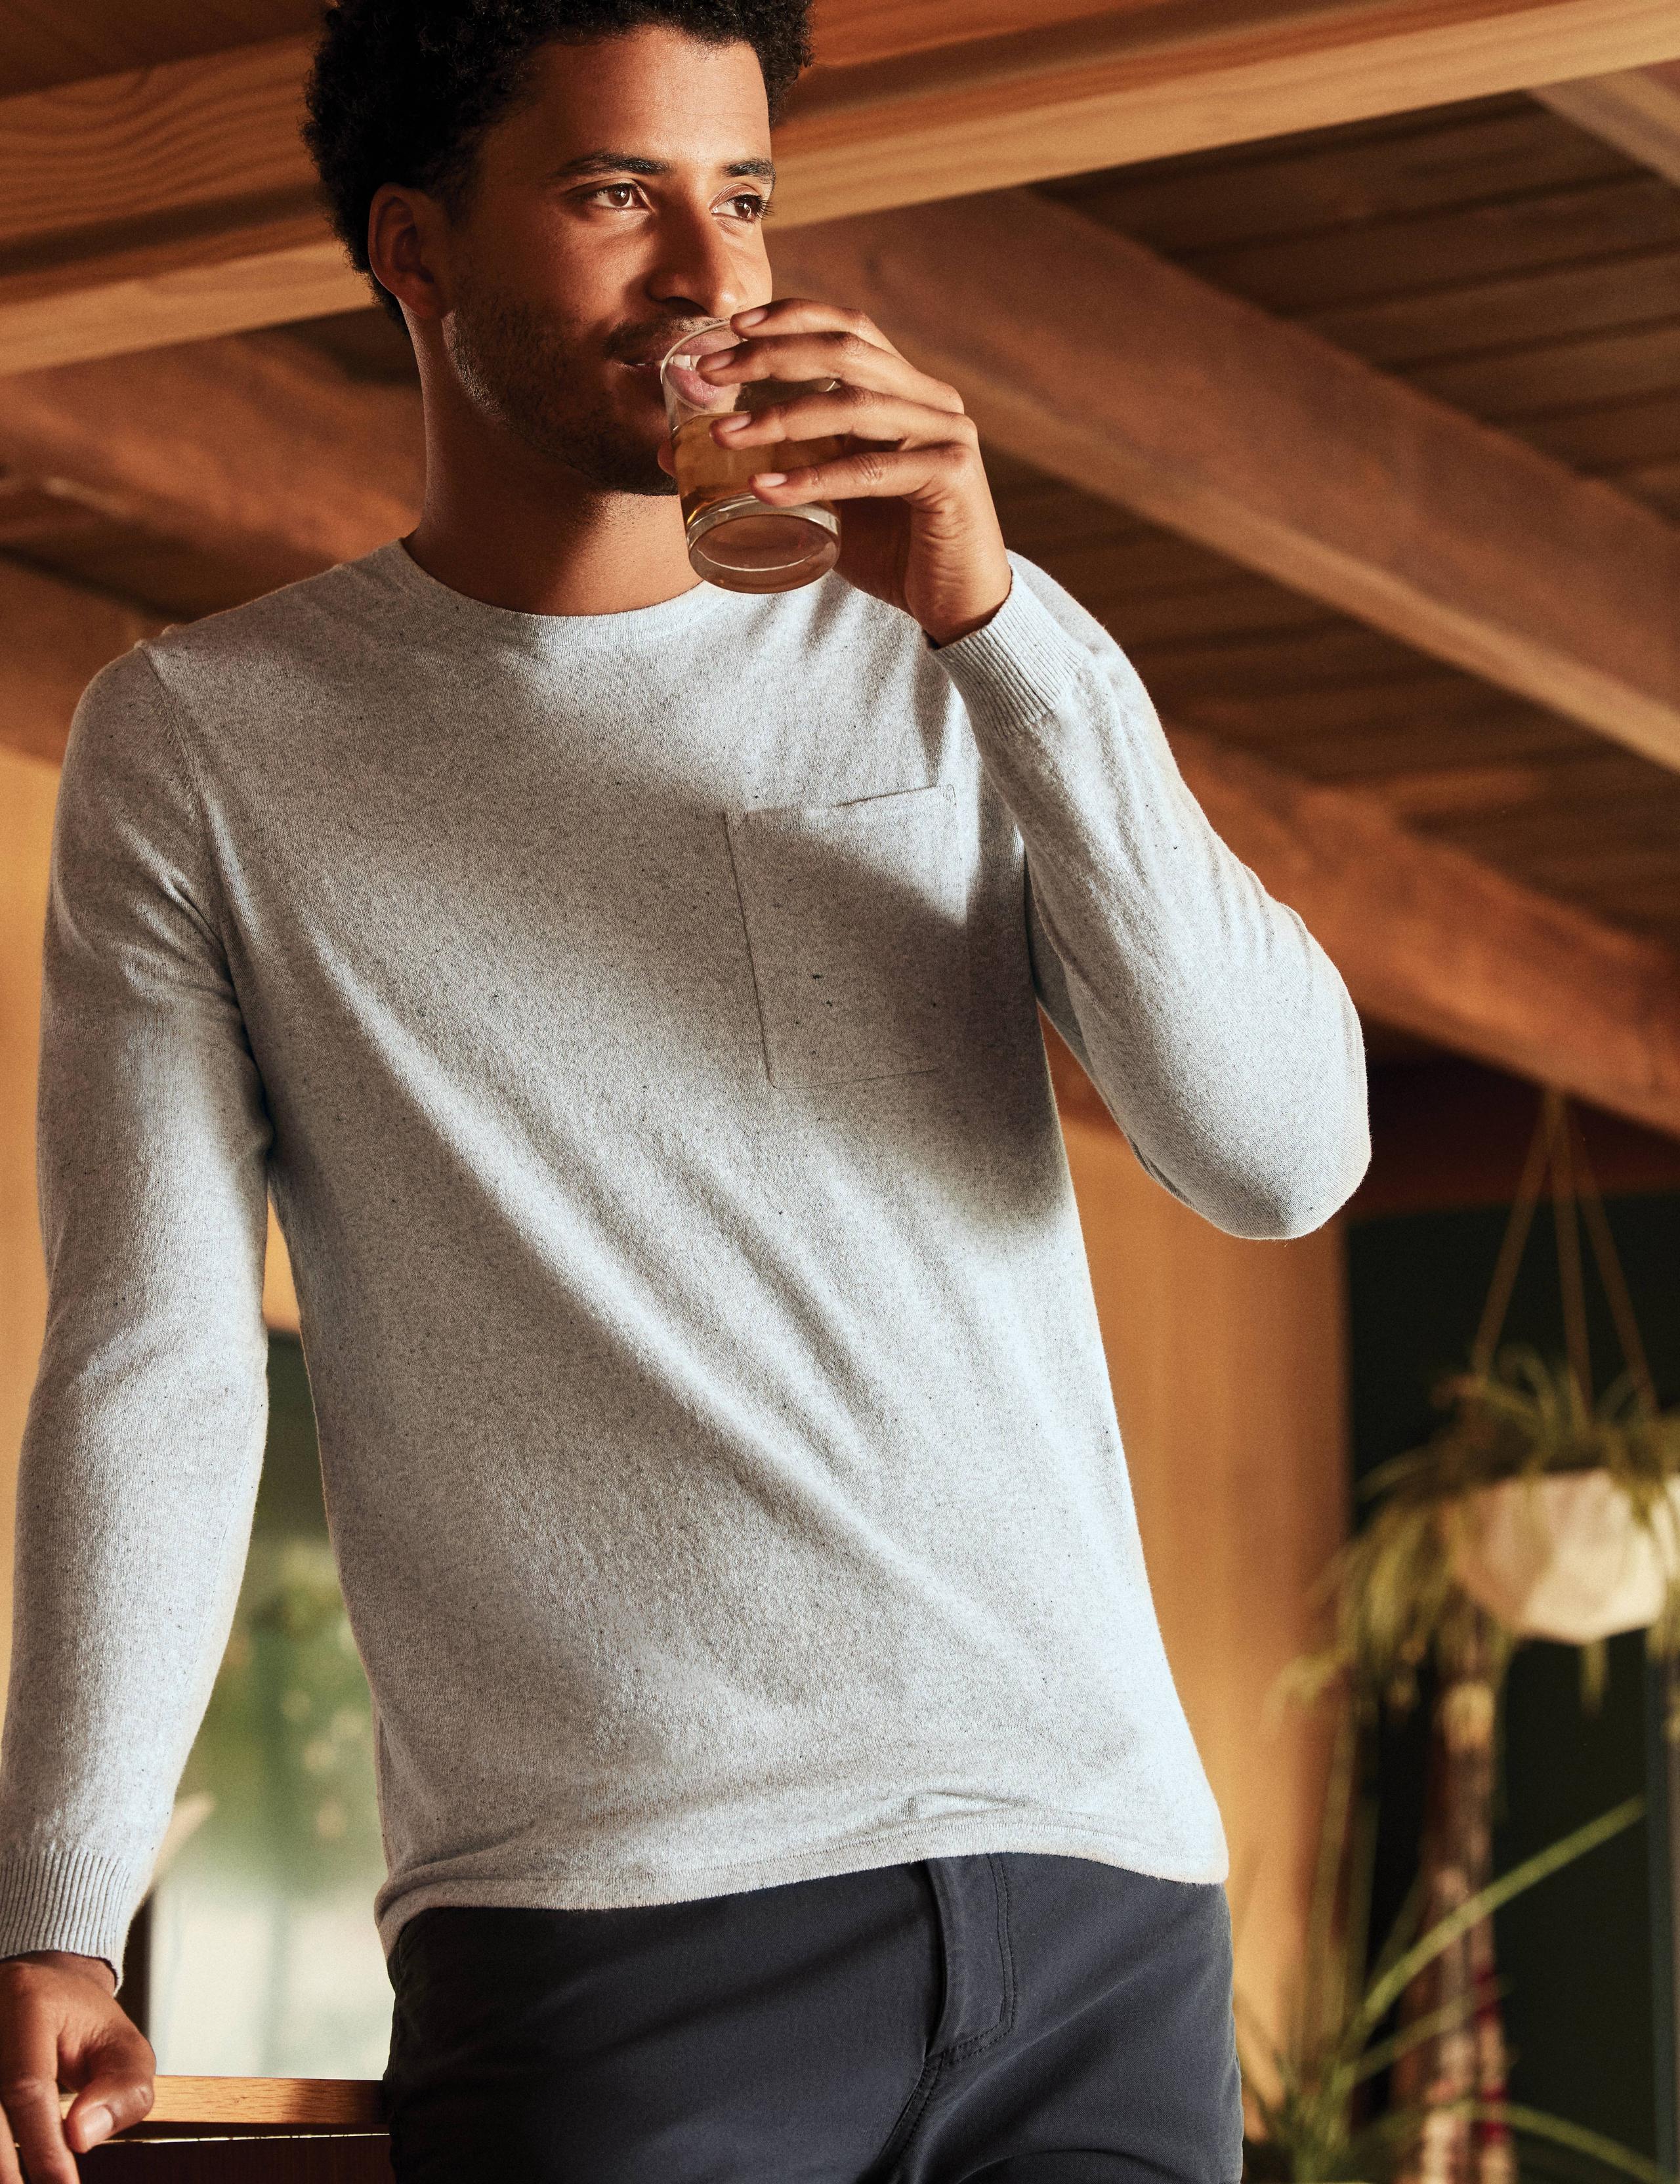 Men wearing Aero Sweater